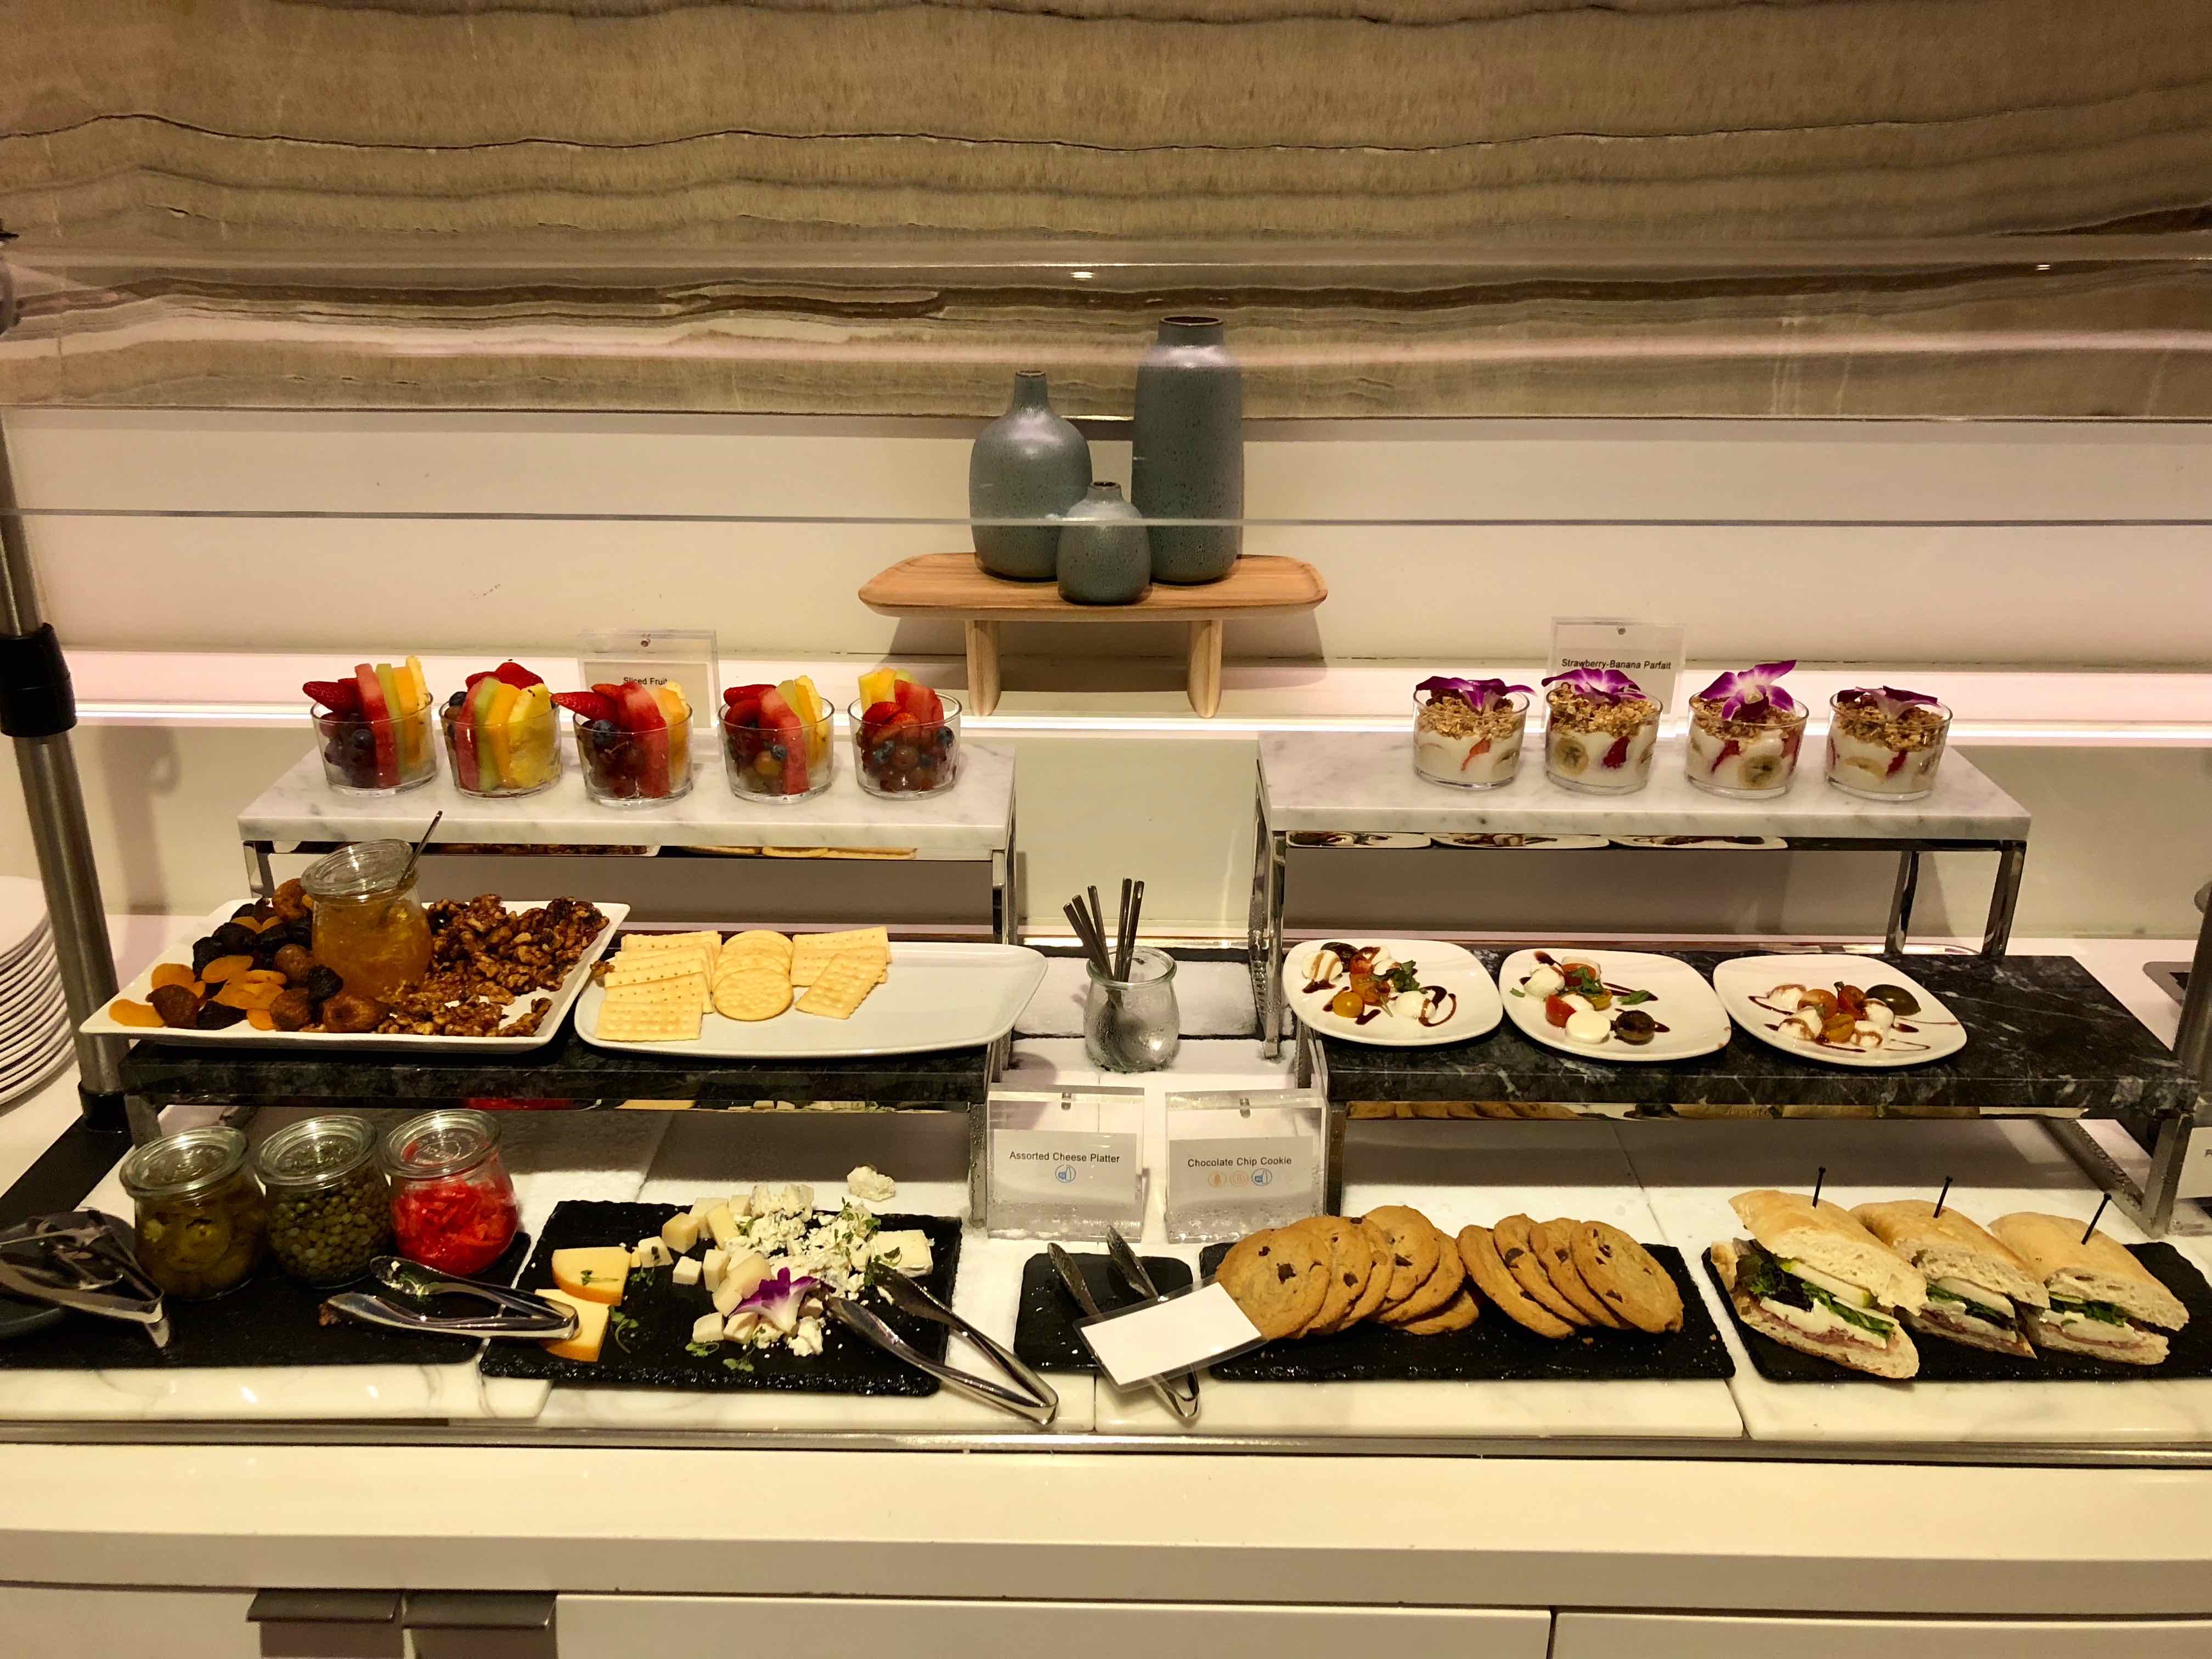 Star Alliance First Class LAX Lounge buffet food